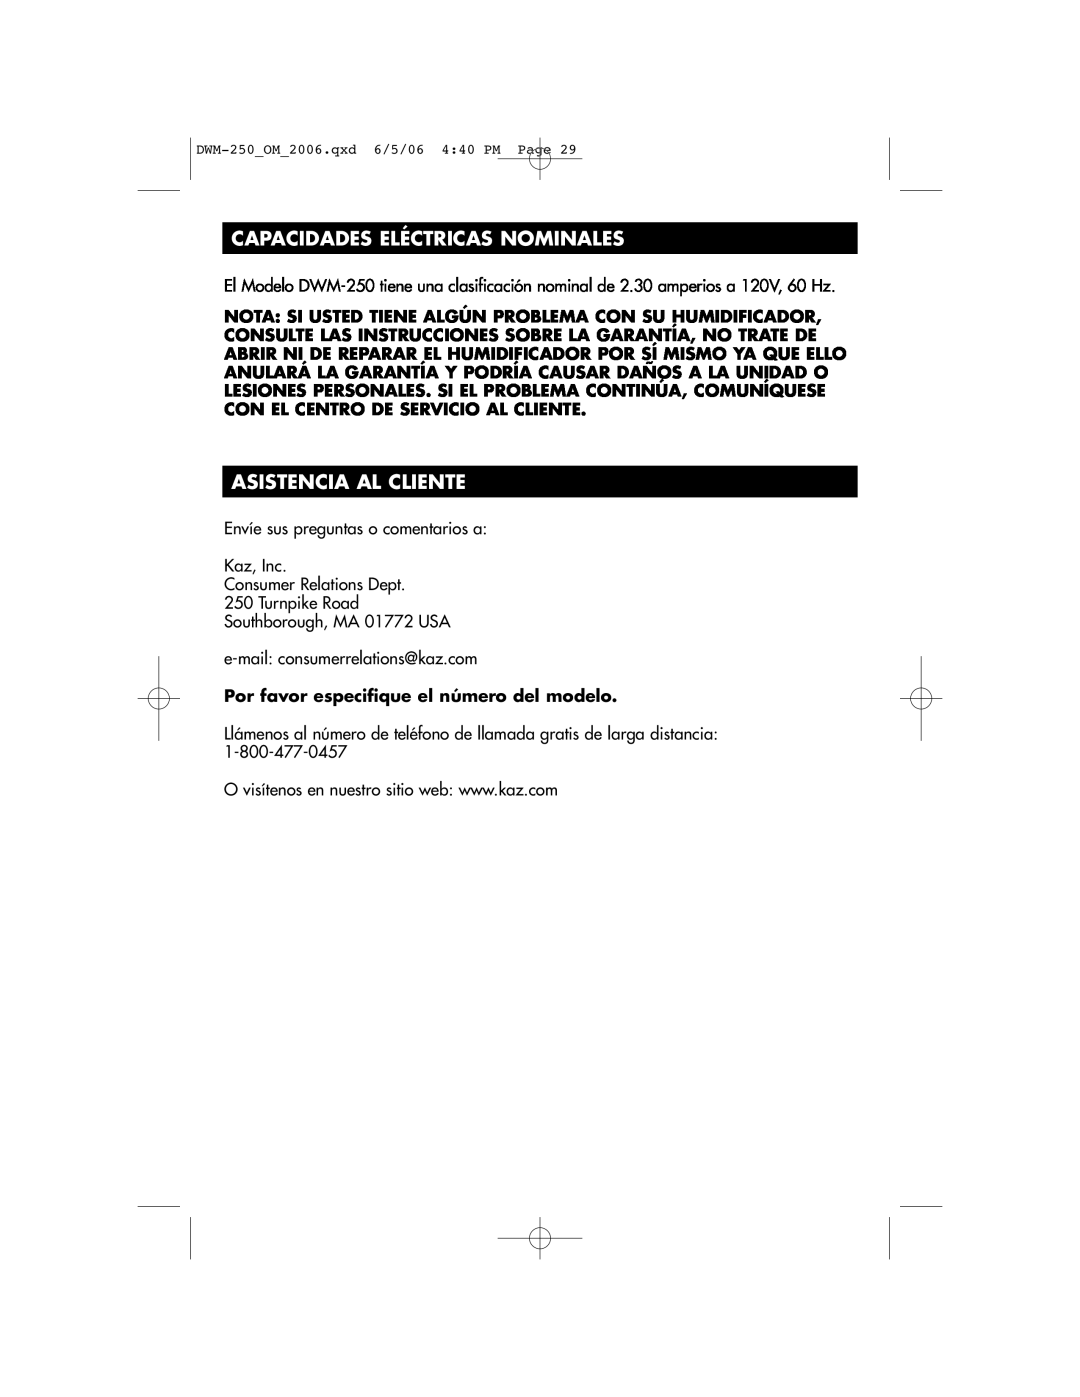 Duracraft DWM-250 owner manual Capacidades Eléctricas Nominales, Asistencia Al Cliente 